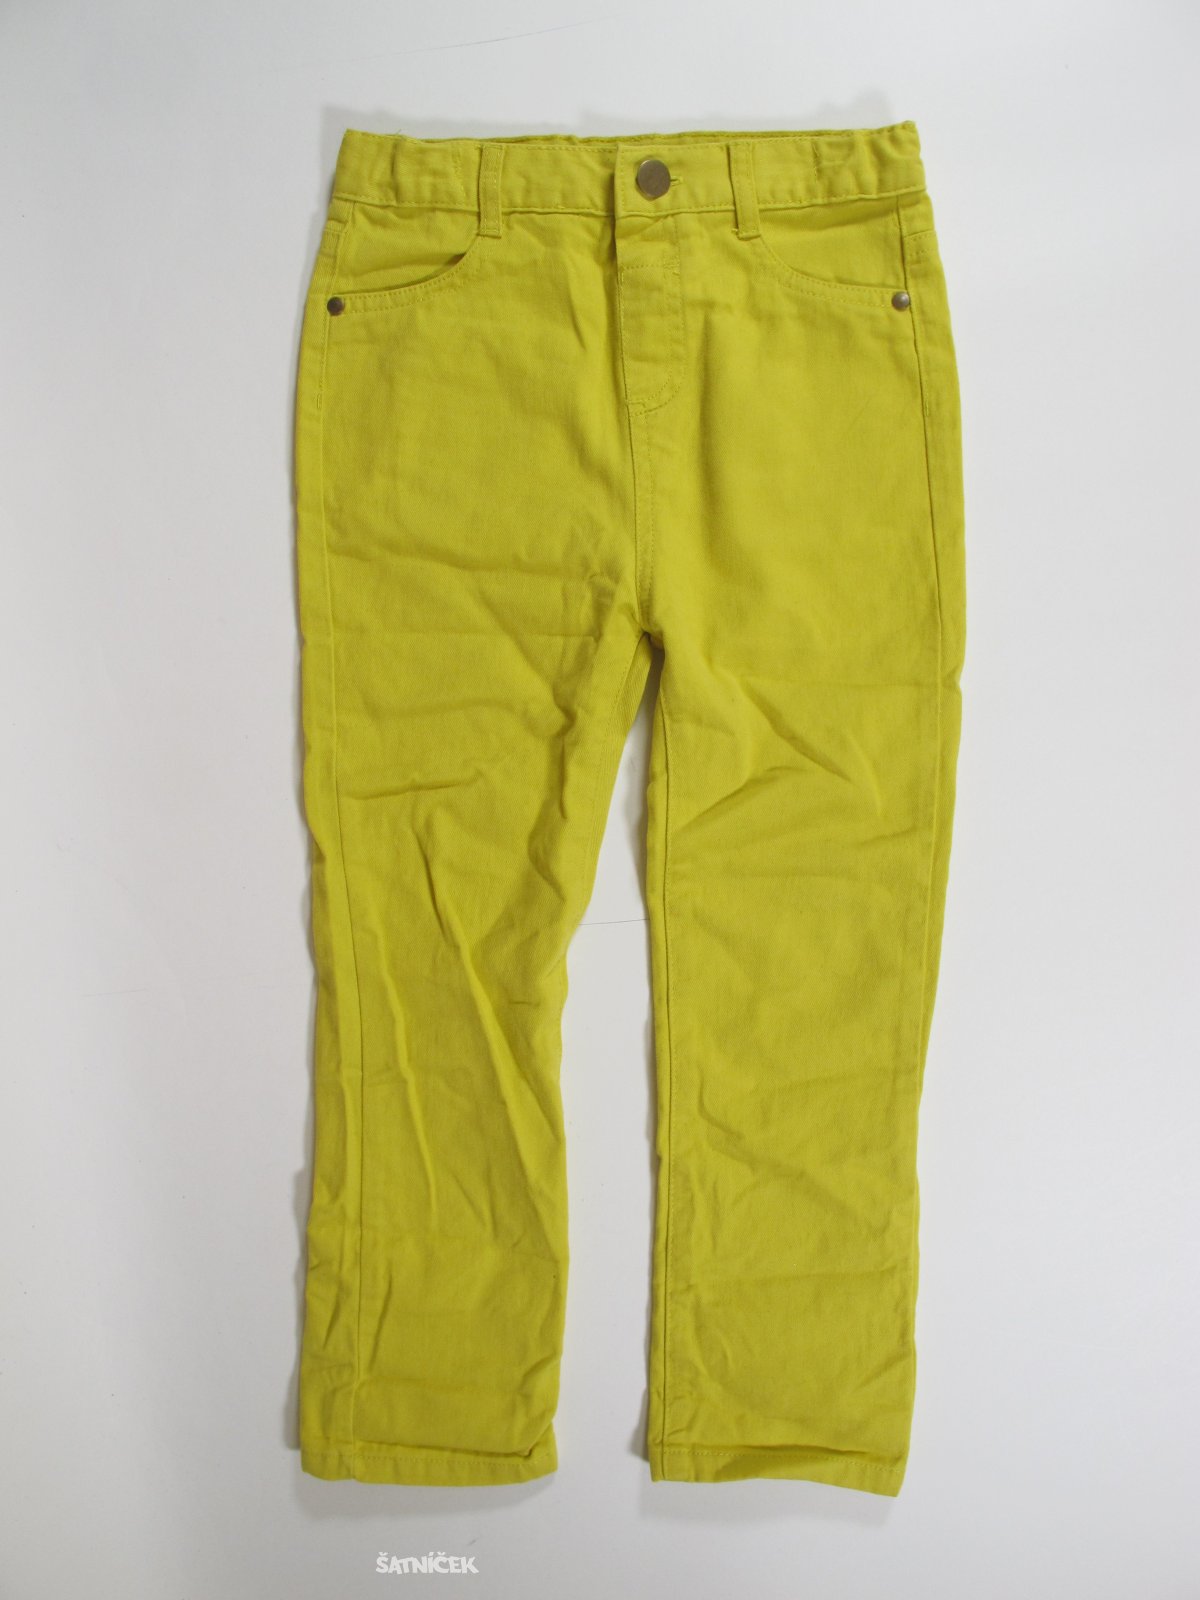 Kalhoty s pro holky  žluté secondhand